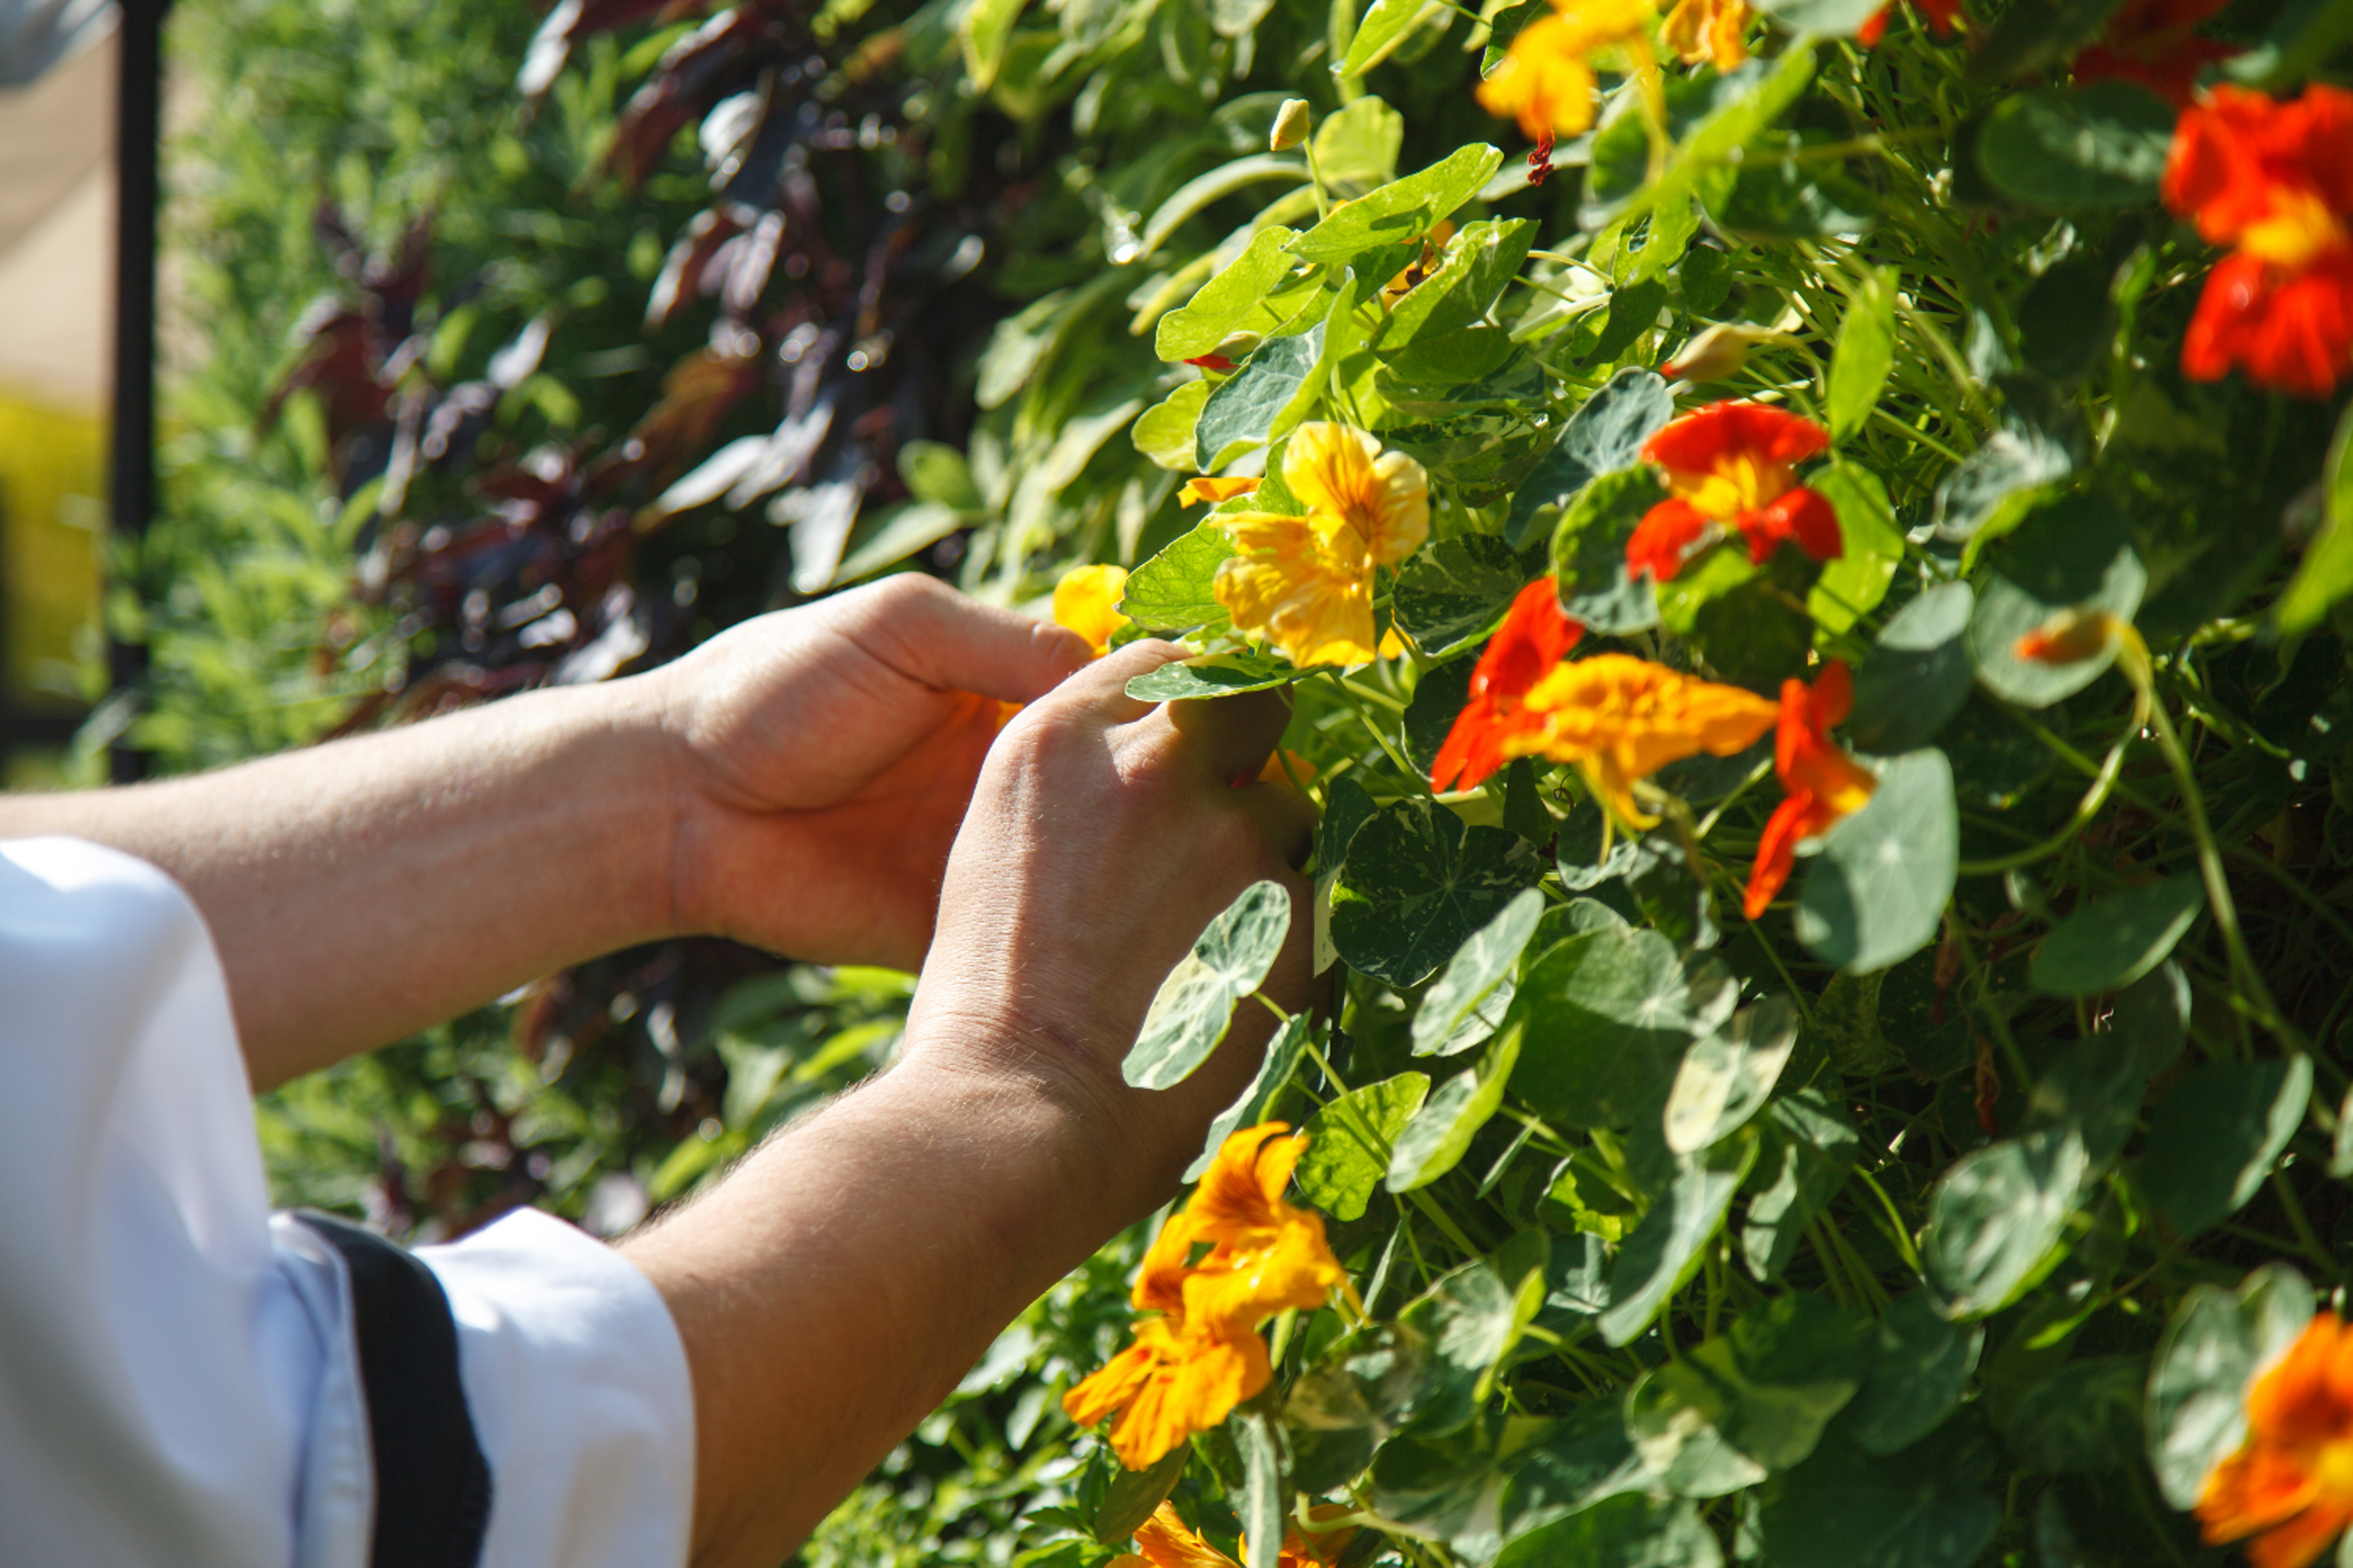 Cultiver des fleurs comestibles / Jardinage